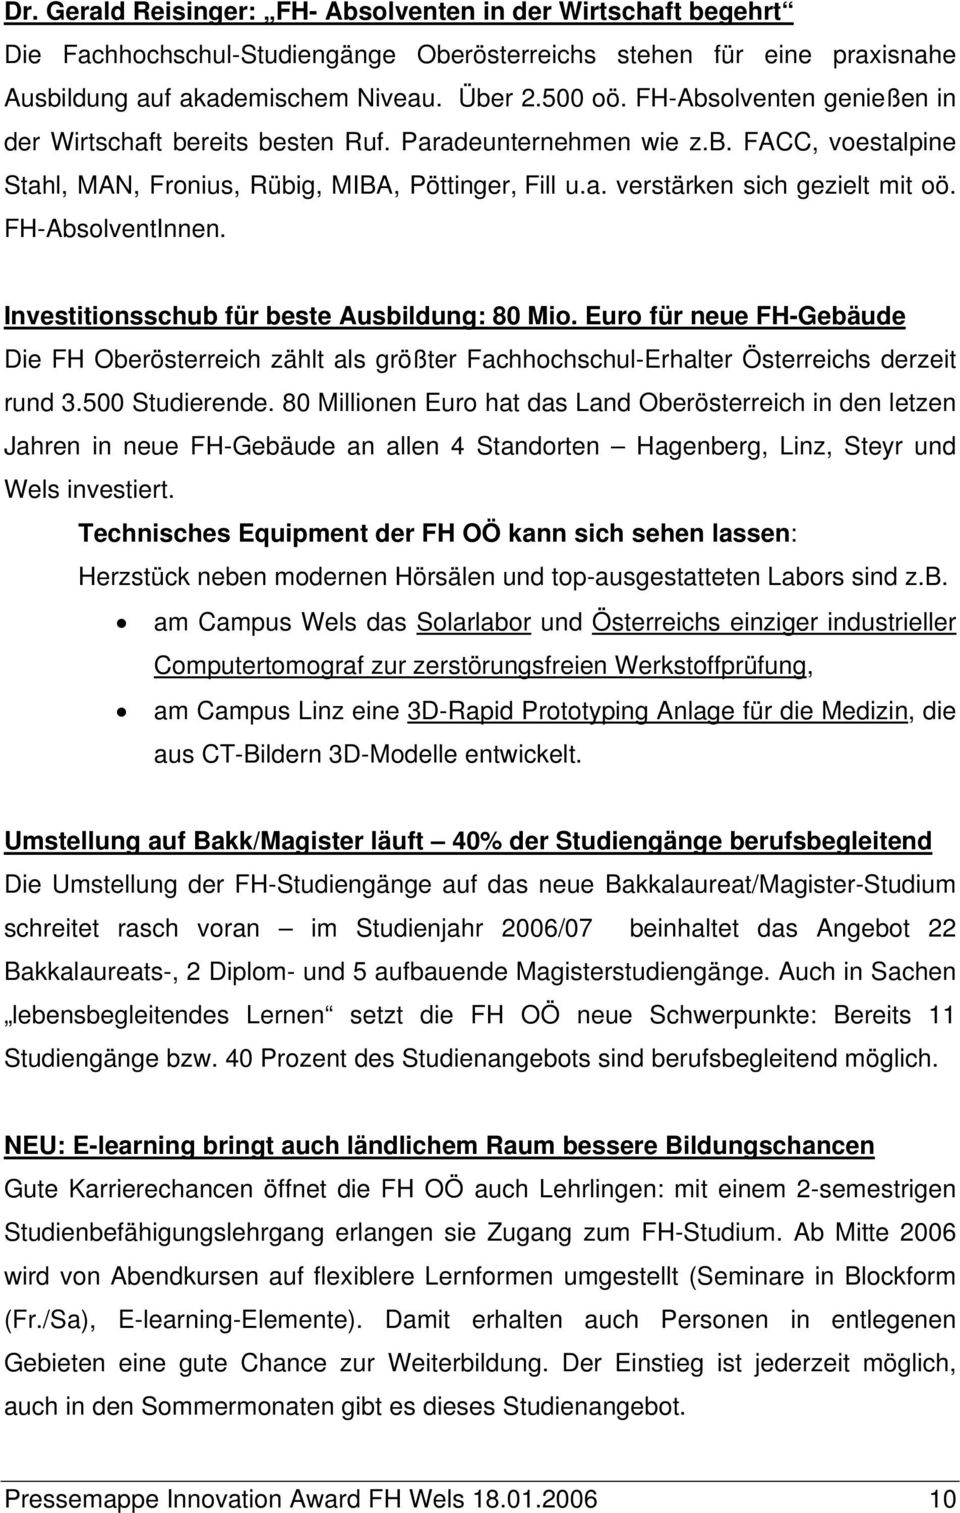 FH-AbsolventInnen. Investitionsschub für beste Ausbildung: 80 Mio. Euro für neue FH-Gebäude Die FH Oberösterreich zählt als größter Fachhochschul-Erhalter Österreichs derzeit rund 3.500 Studierende.